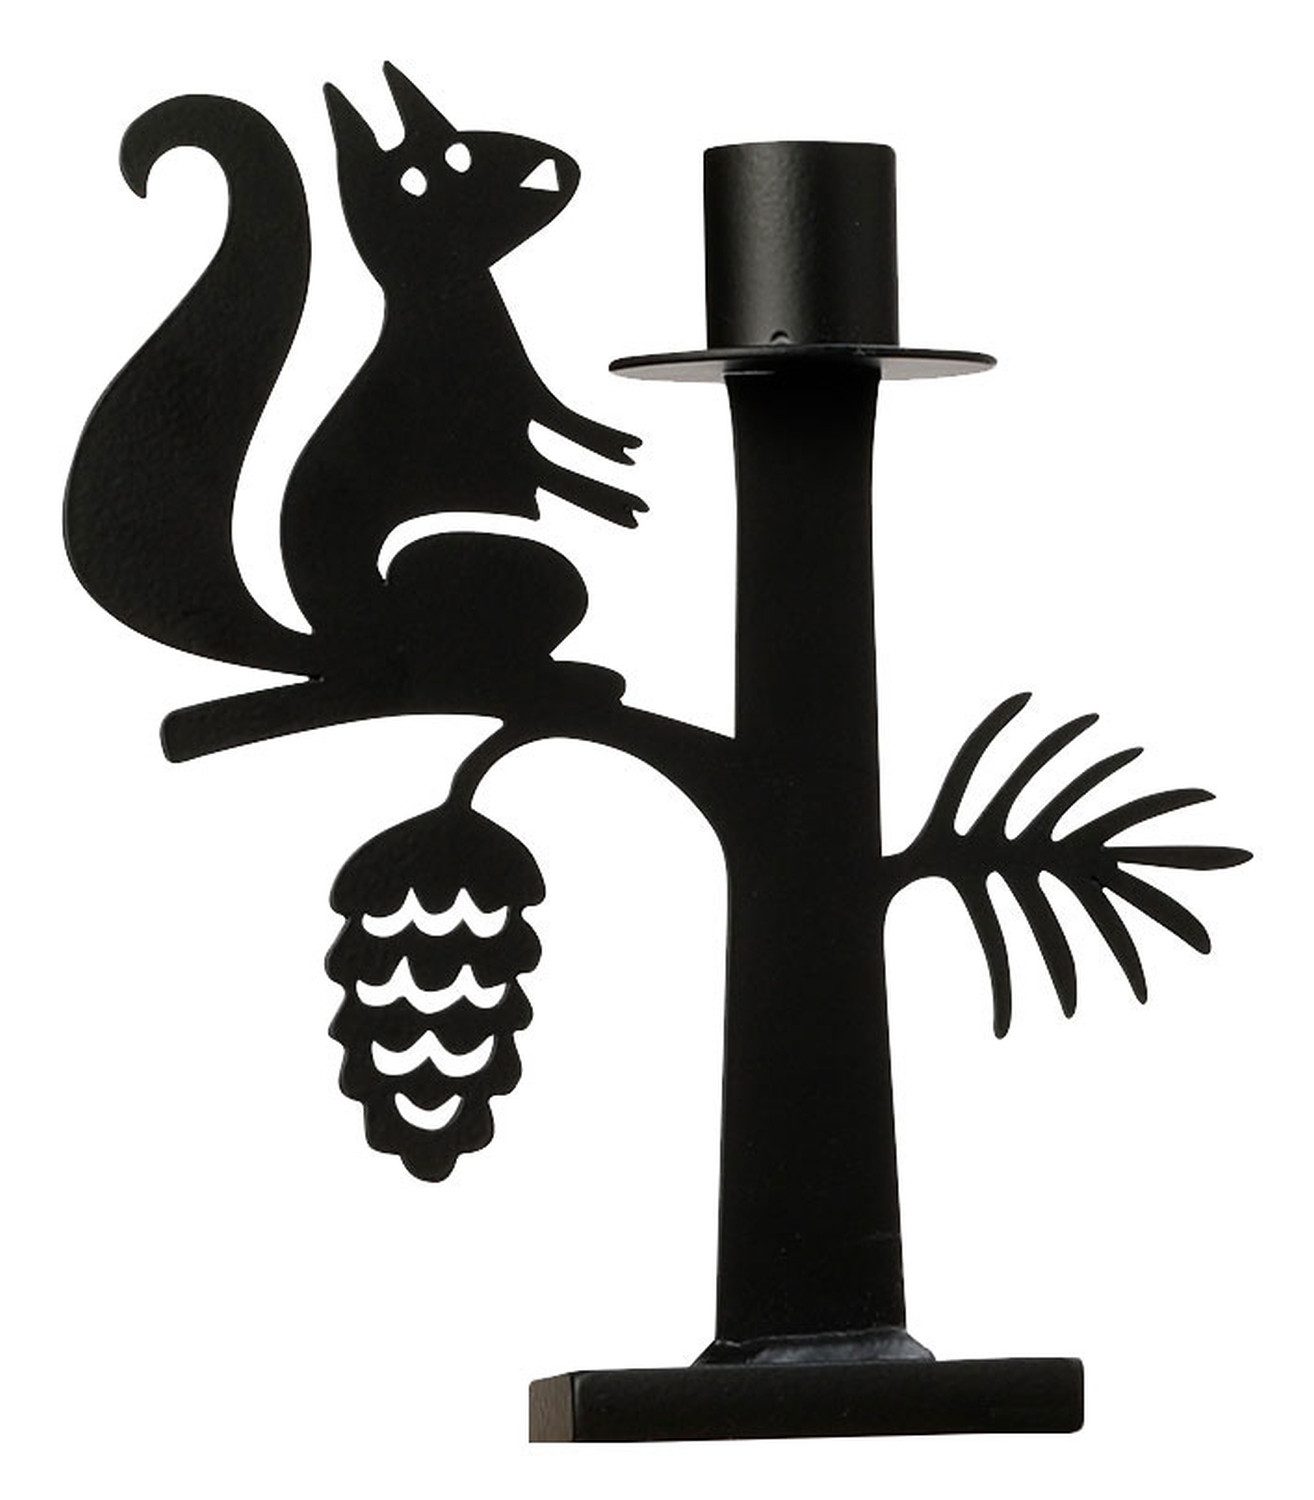 Bengt & Lotta Kerzenständer Eichhörnchen Höhe 17 cm schwarz Eisen (lackiert), hergestellt in Schweden Material: Eisen (lackiert)